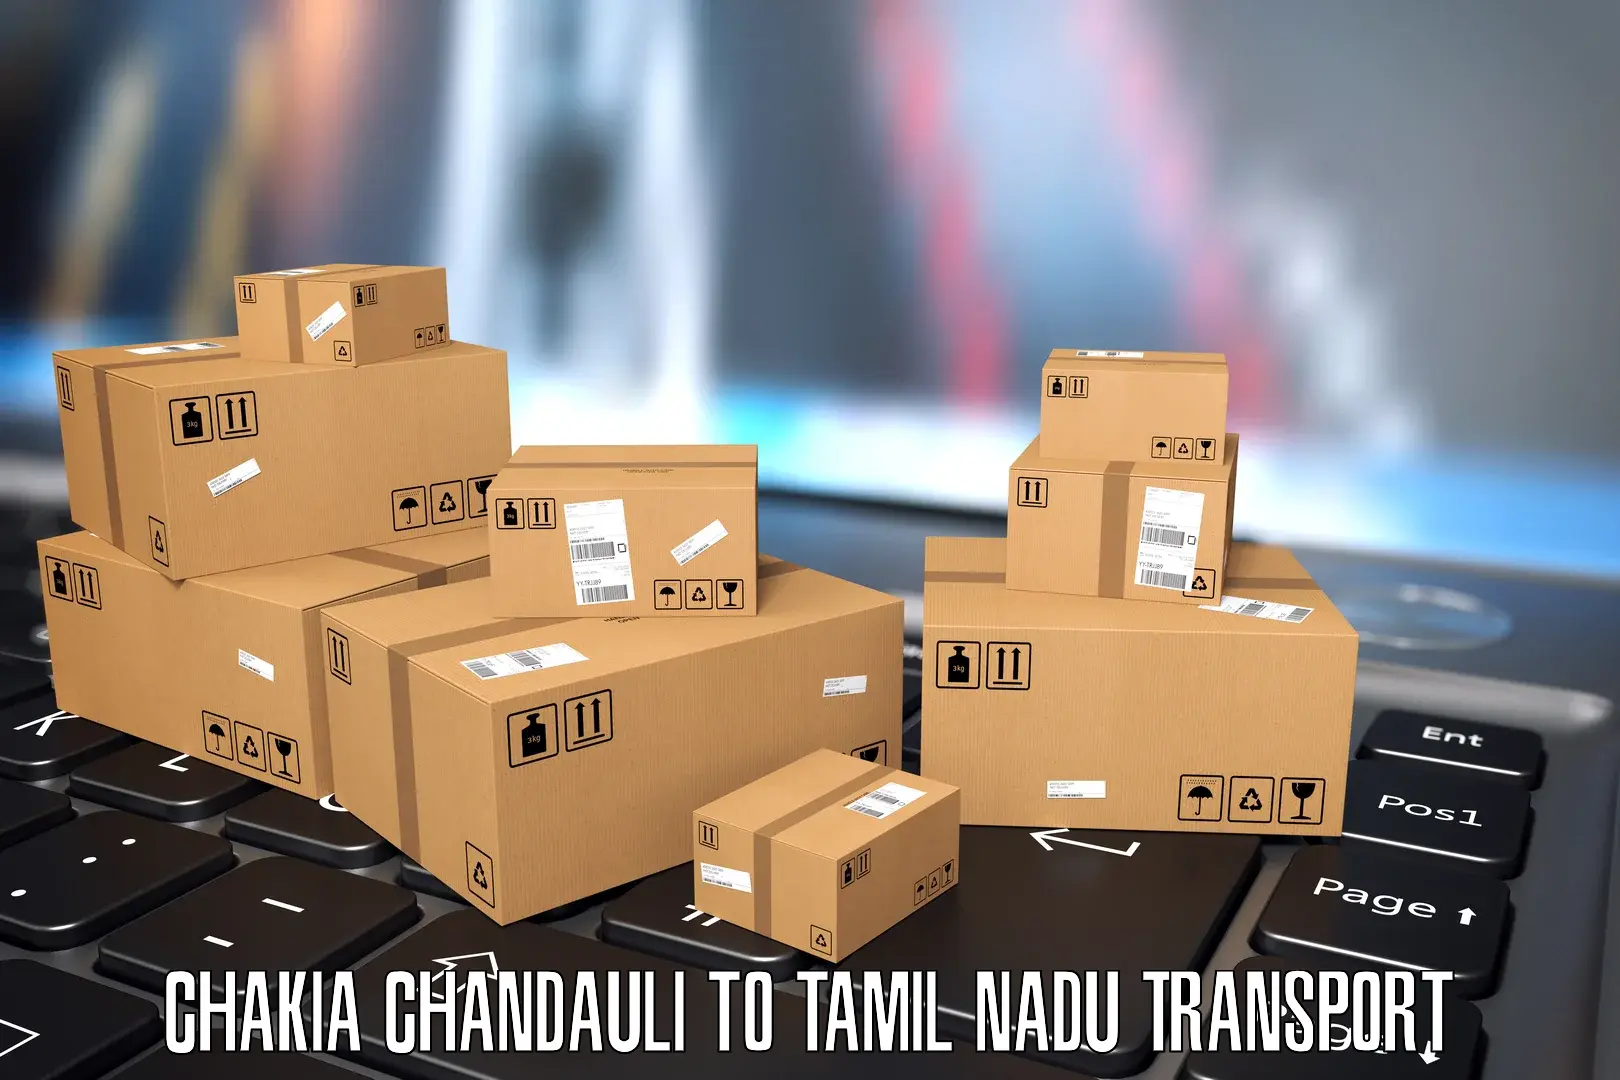 Transportation services Chakia Chandauli to Ayyampettai